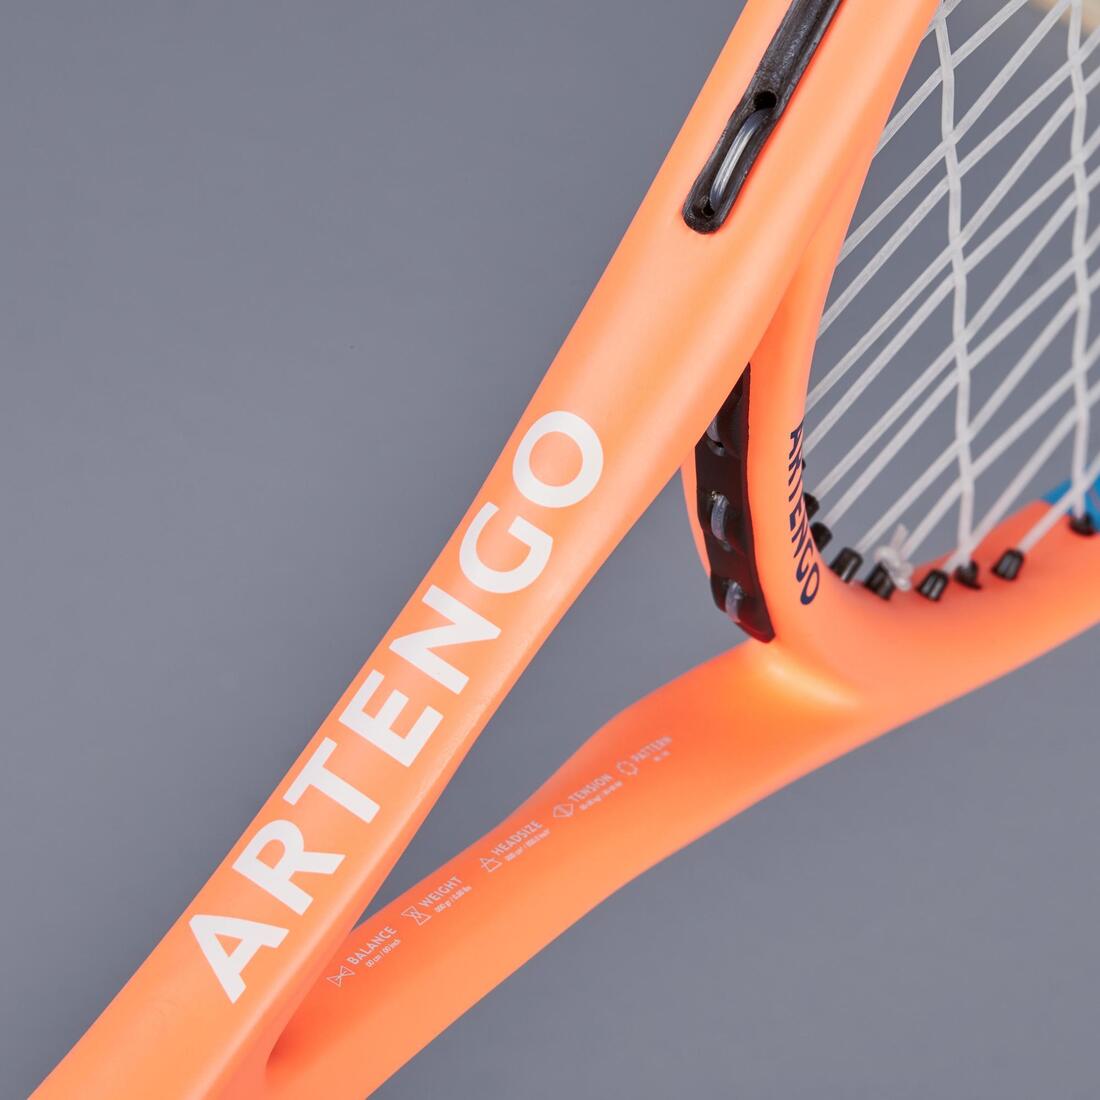 ARTENGO(アルテンゴ) テニス ラケット 530 25インチ キッズ